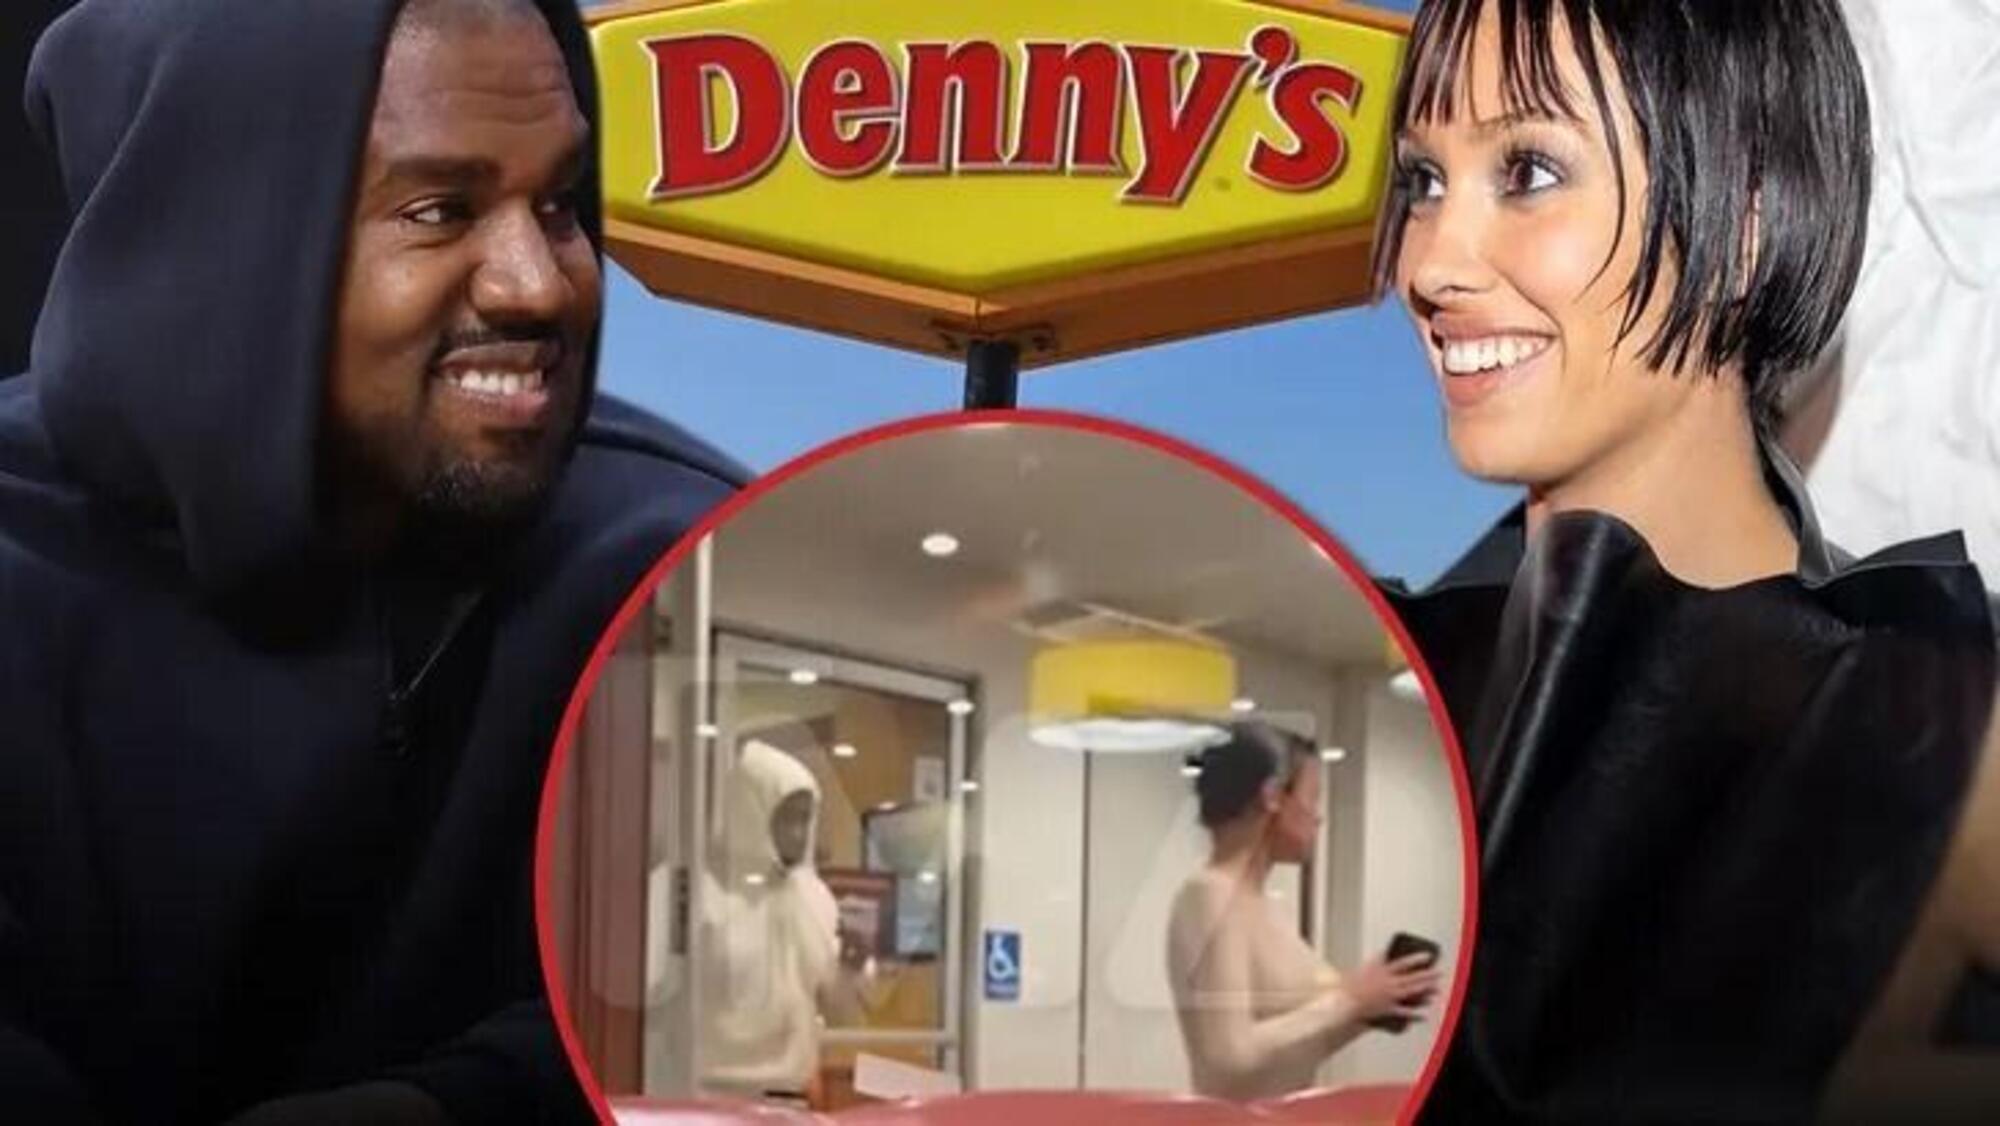 La coppia paparazzata nel fast food americano